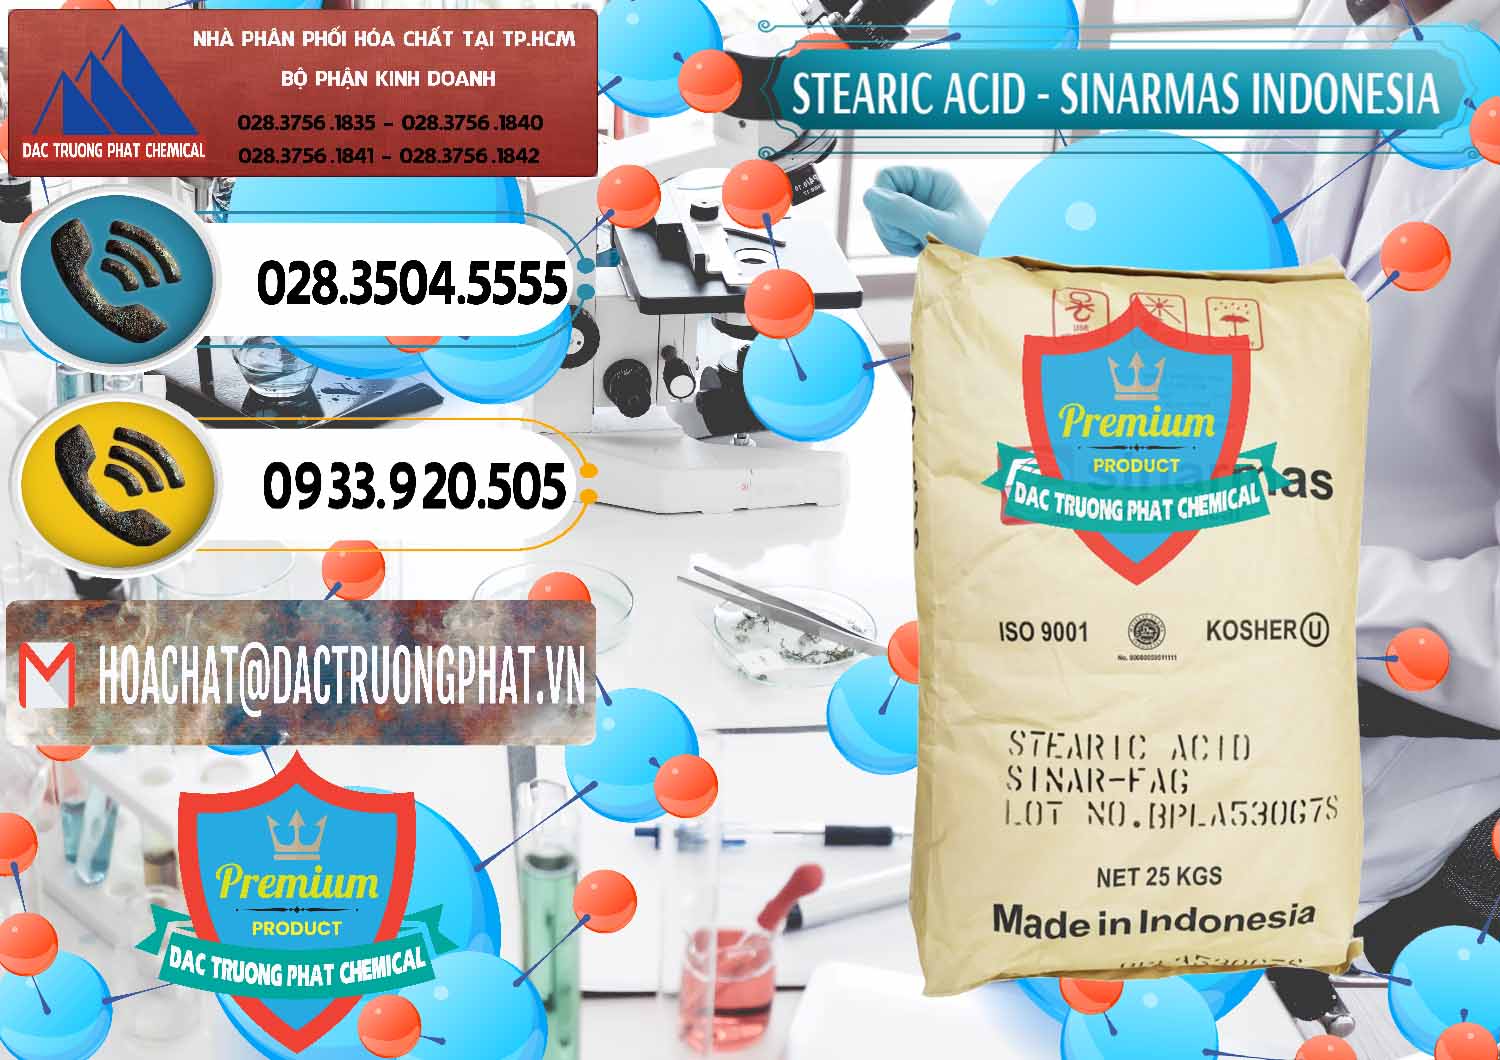 Nơi chuyên phân phối & bán Axit Stearic - Stearic Acid Sinarmas Indonesia - 0389 - Công ty phân phối và cung cấp hóa chất tại TP.HCM - hoachatdetnhuom.vn